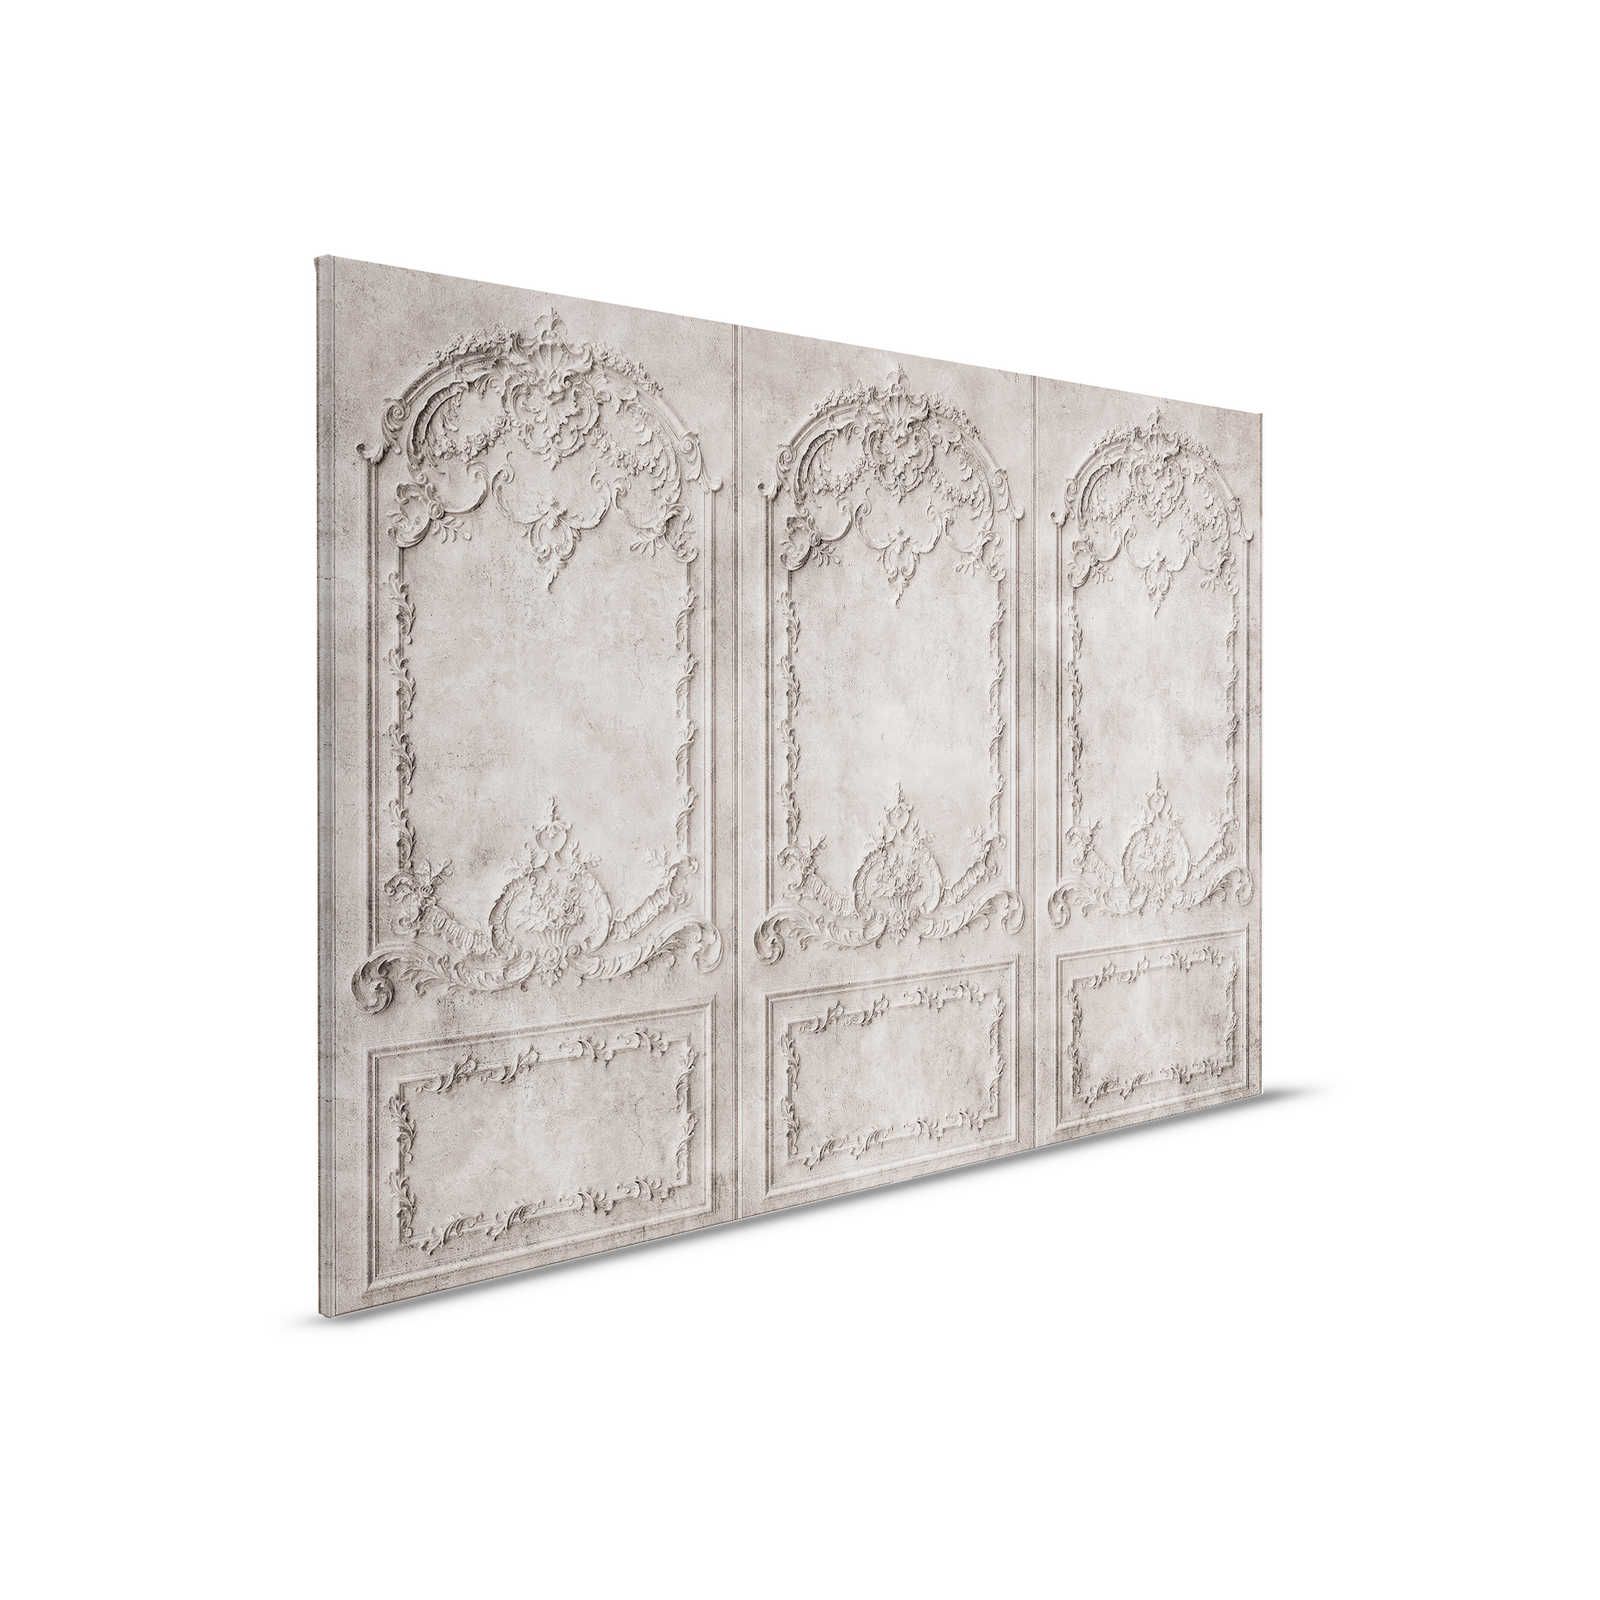 Versalles 1 - Cuadro en lienzo gris-marrón estilo barroco paneles de madera - 0,90 m x 0,60 m
